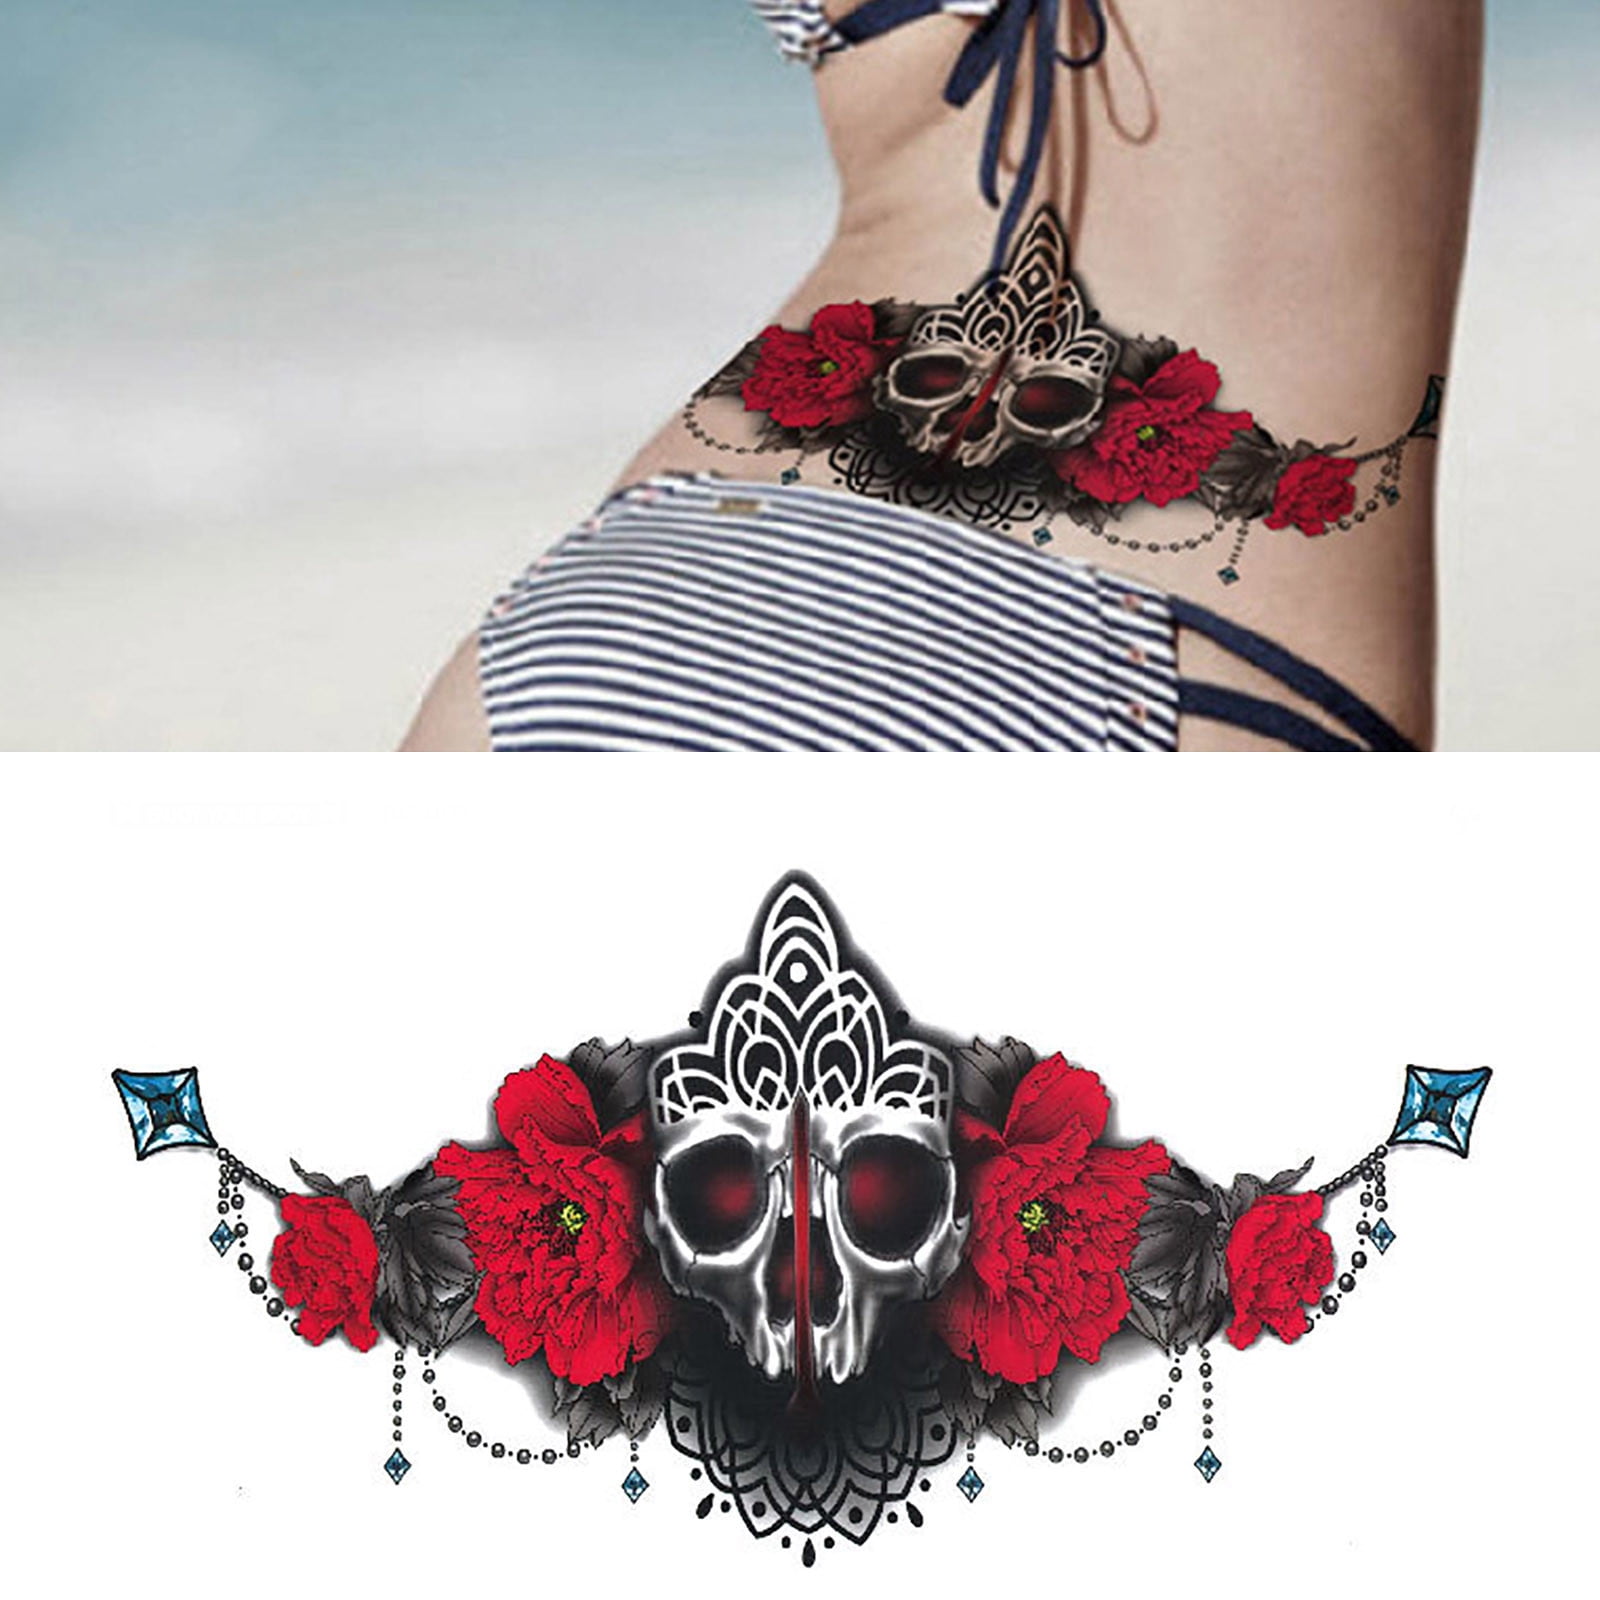 CFXNMZGR Pro Beauty Tools Tattoo Accessories Black Underboob